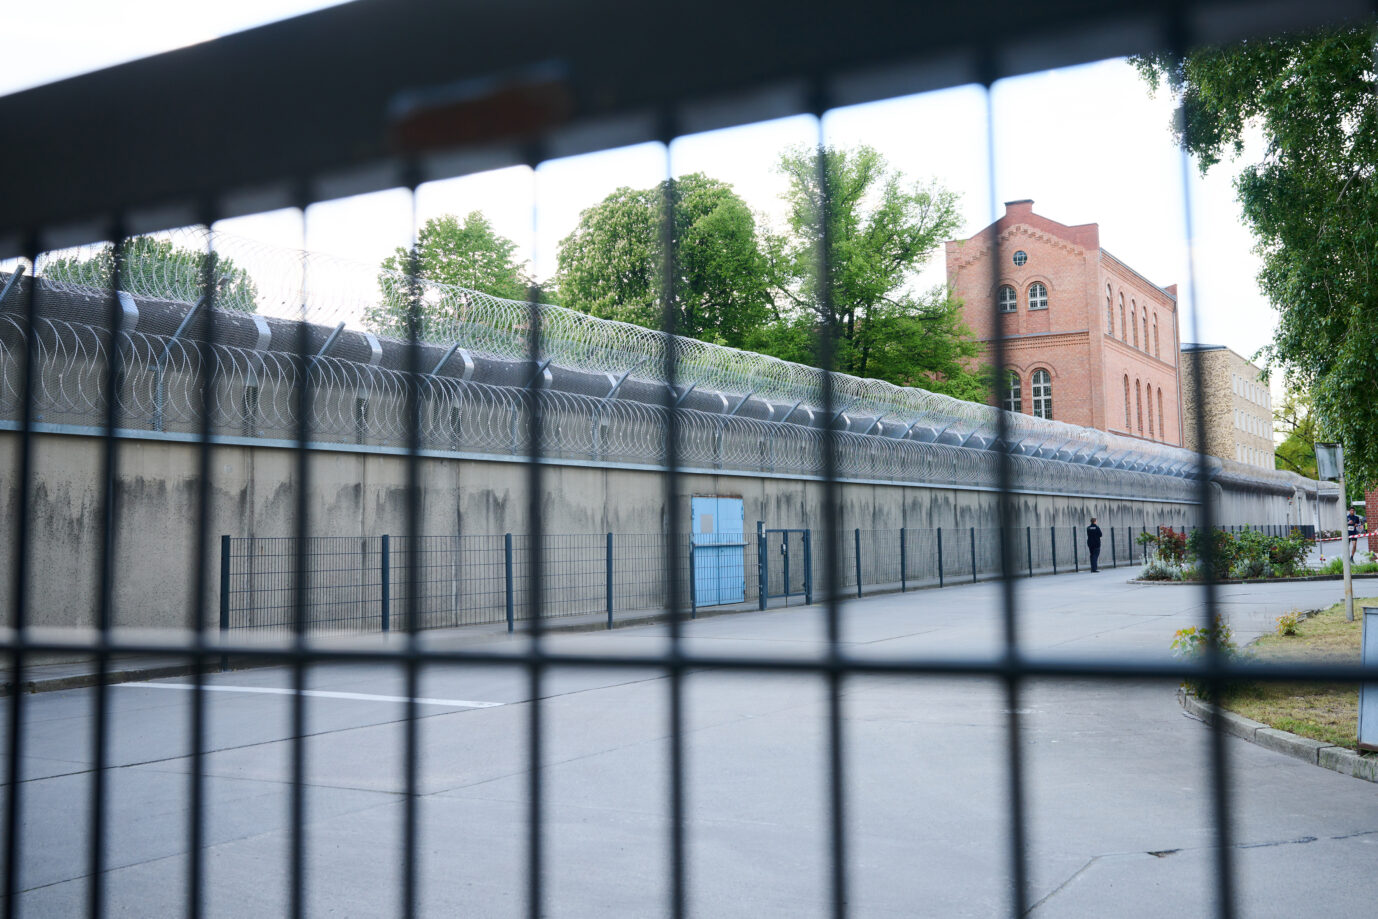 Die Anteil der Ausländer in deutschen Gefängnissen liegt bei über 50 Prozent. Das geht aus einer Antwort des Bundesjustizministeriums auf eine schriftliche Anfrage des AfD-Politikers Leif-Erik Holm hervor.